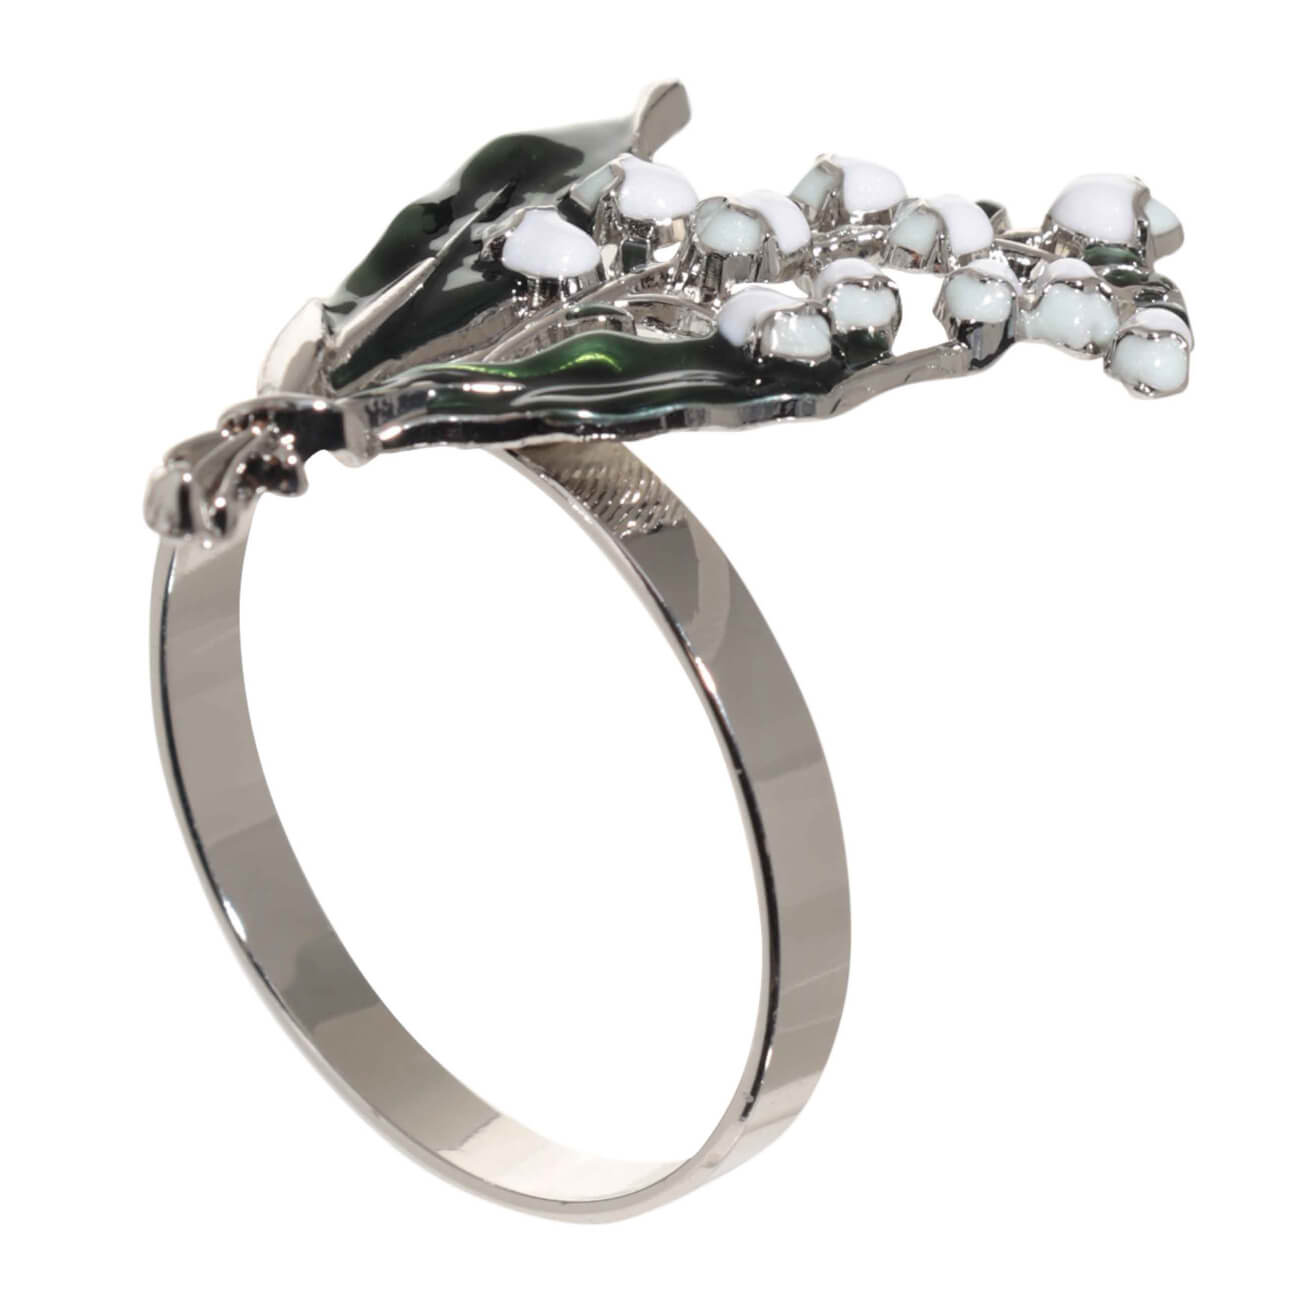 Кольцо для салфеток, 5 см, металл, зелено-серебристое, Ландыш с листьями, May-lily кольцо amore ок ное в серебре безразмерно